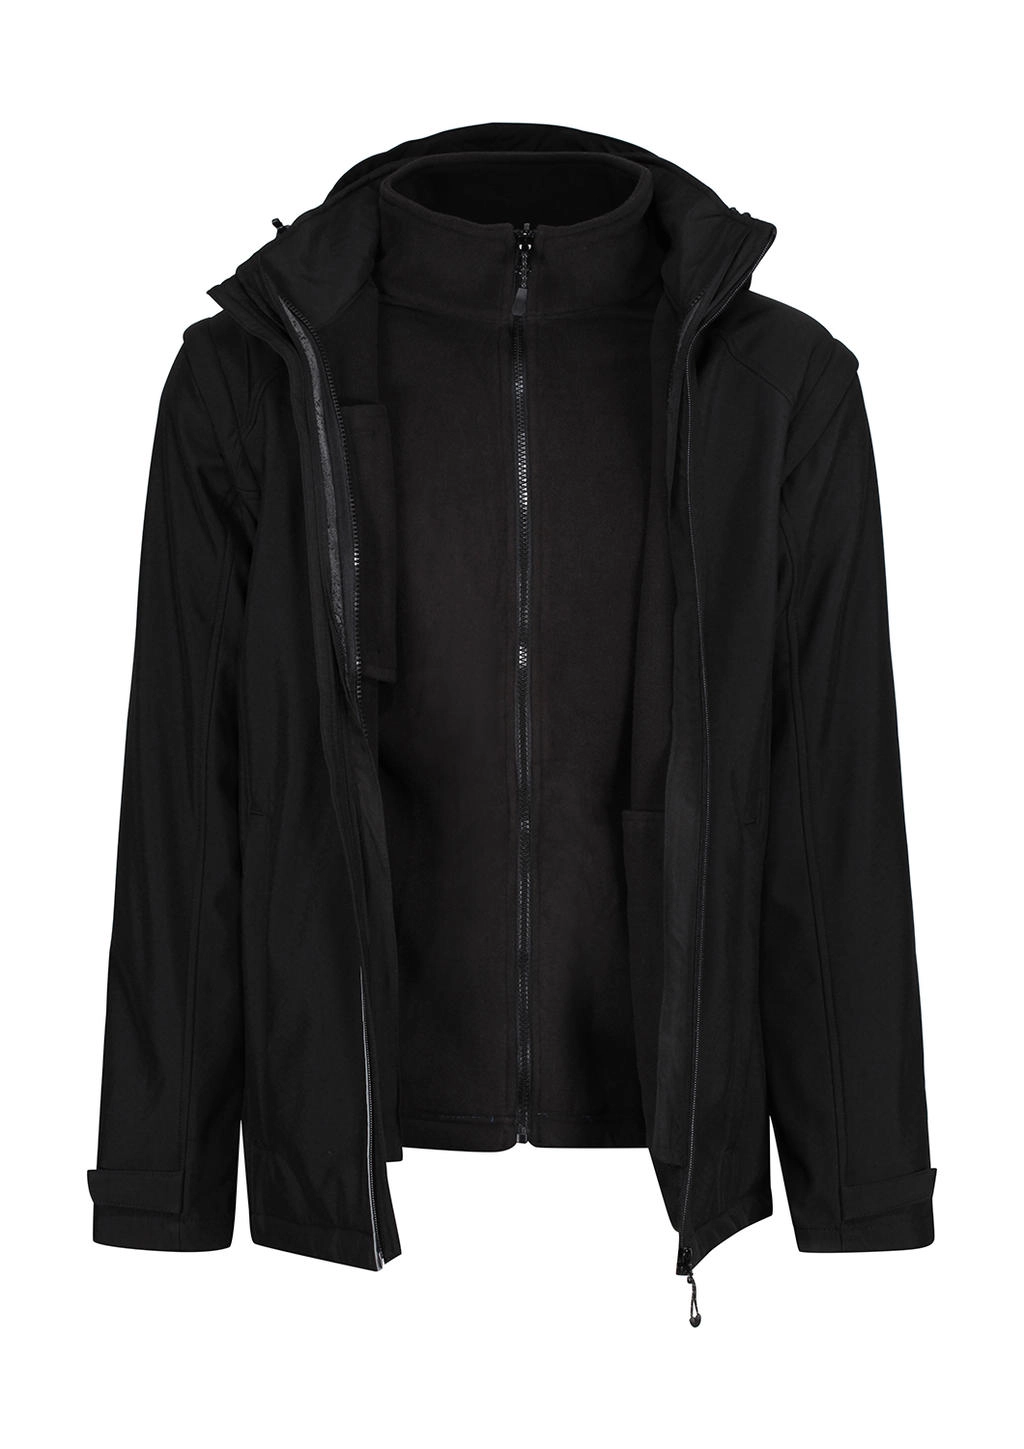 Erasmus 4-in-1 Softshell Jacket zum Besticken und Bedrucken in der Farbe Black/Black mit Ihren Logo, Schriftzug oder Motiv.